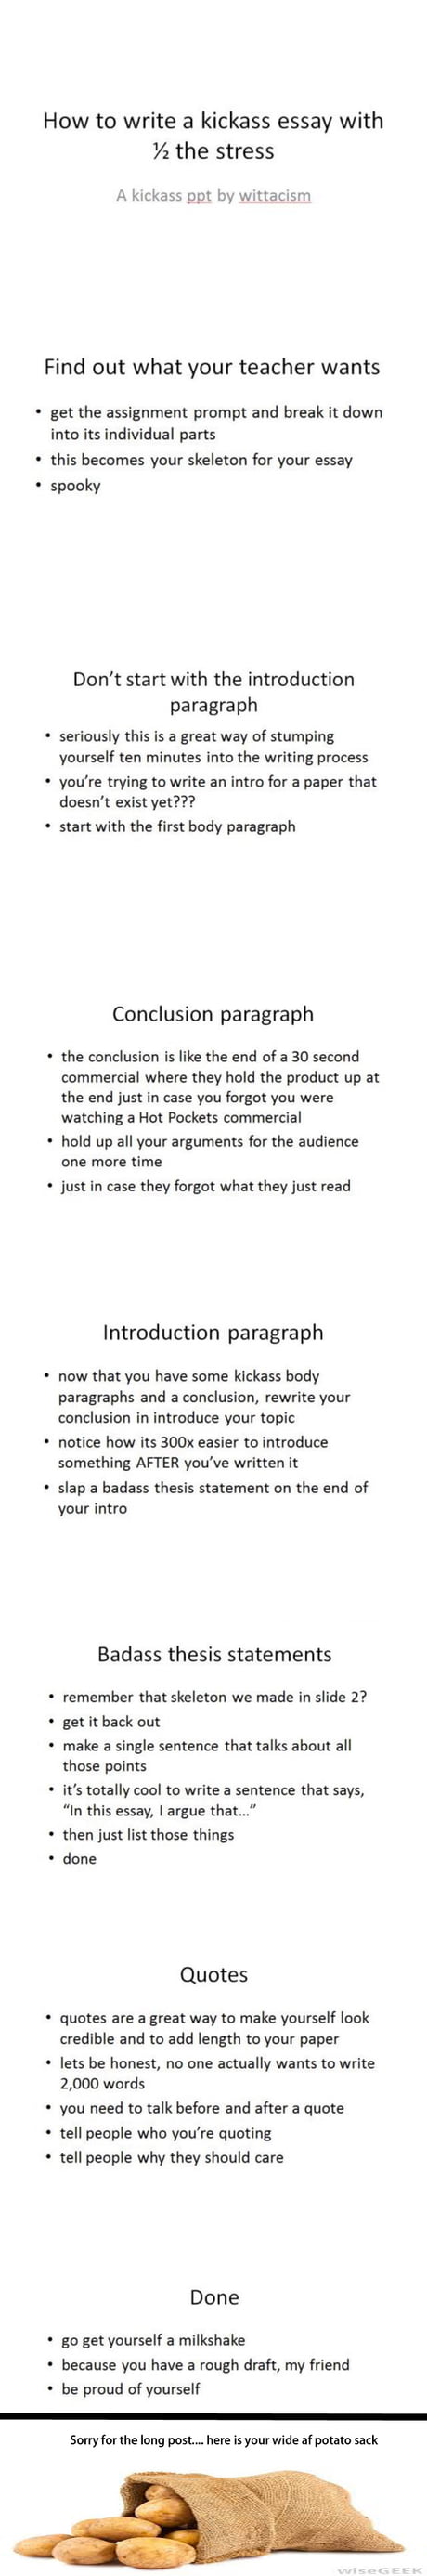 How to write an essay - 29GAG